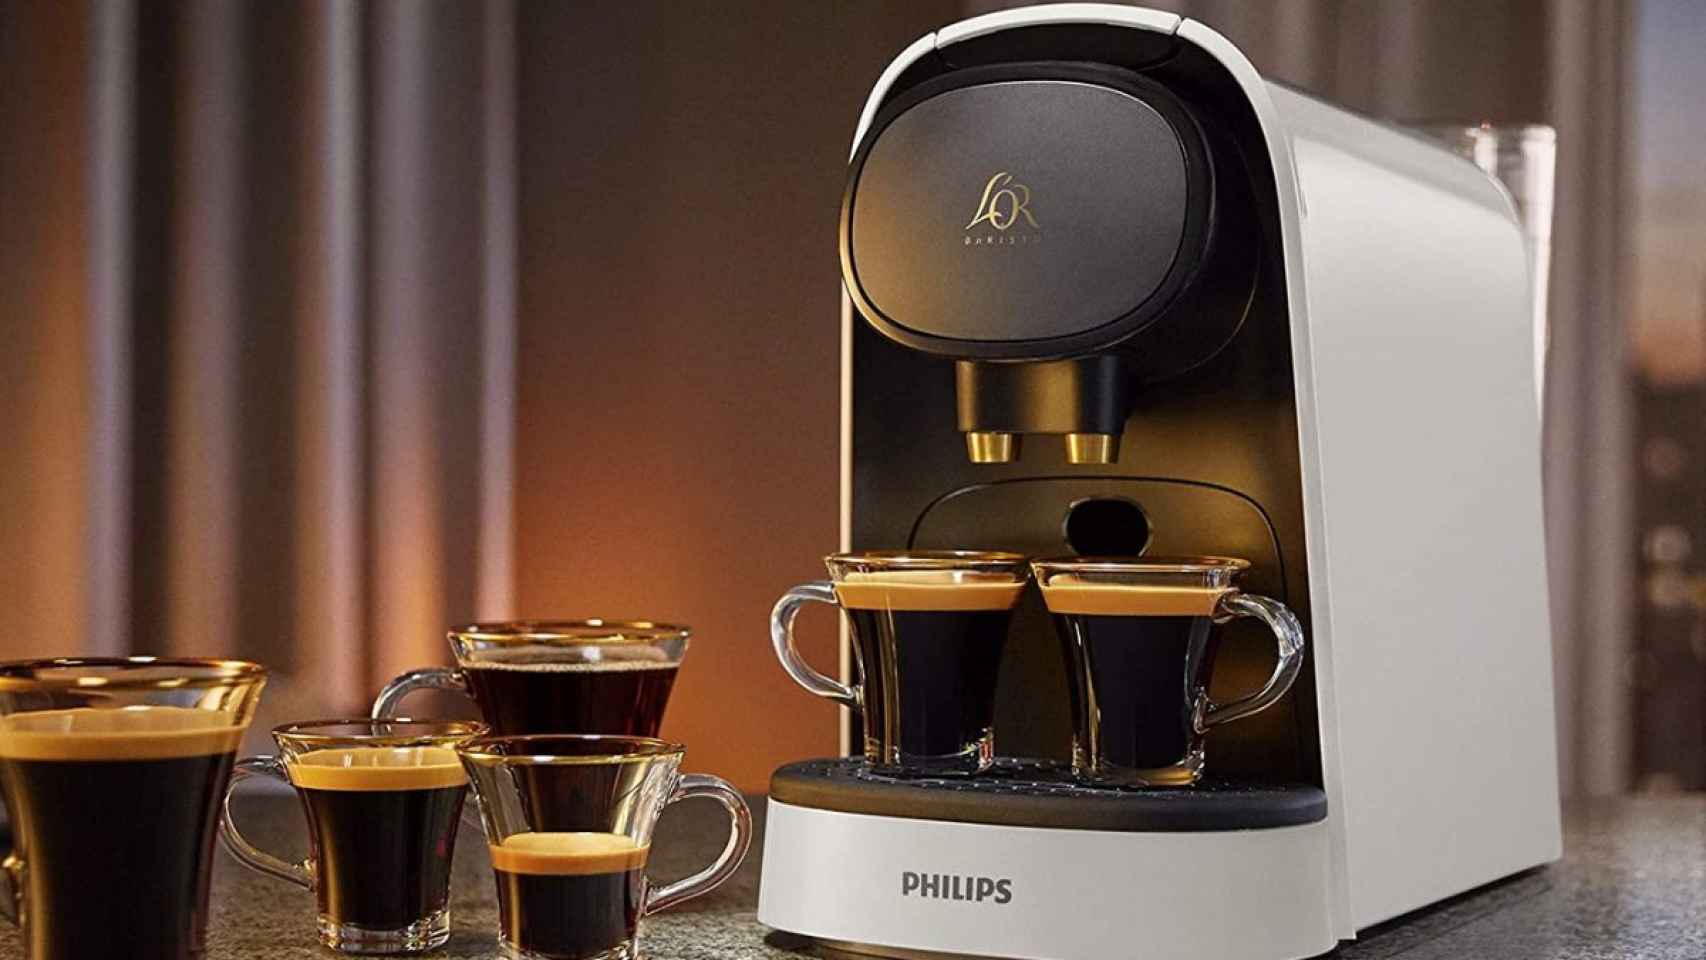 Exclusiva, auténtica y potente: la cafetera de cápsulas Philips